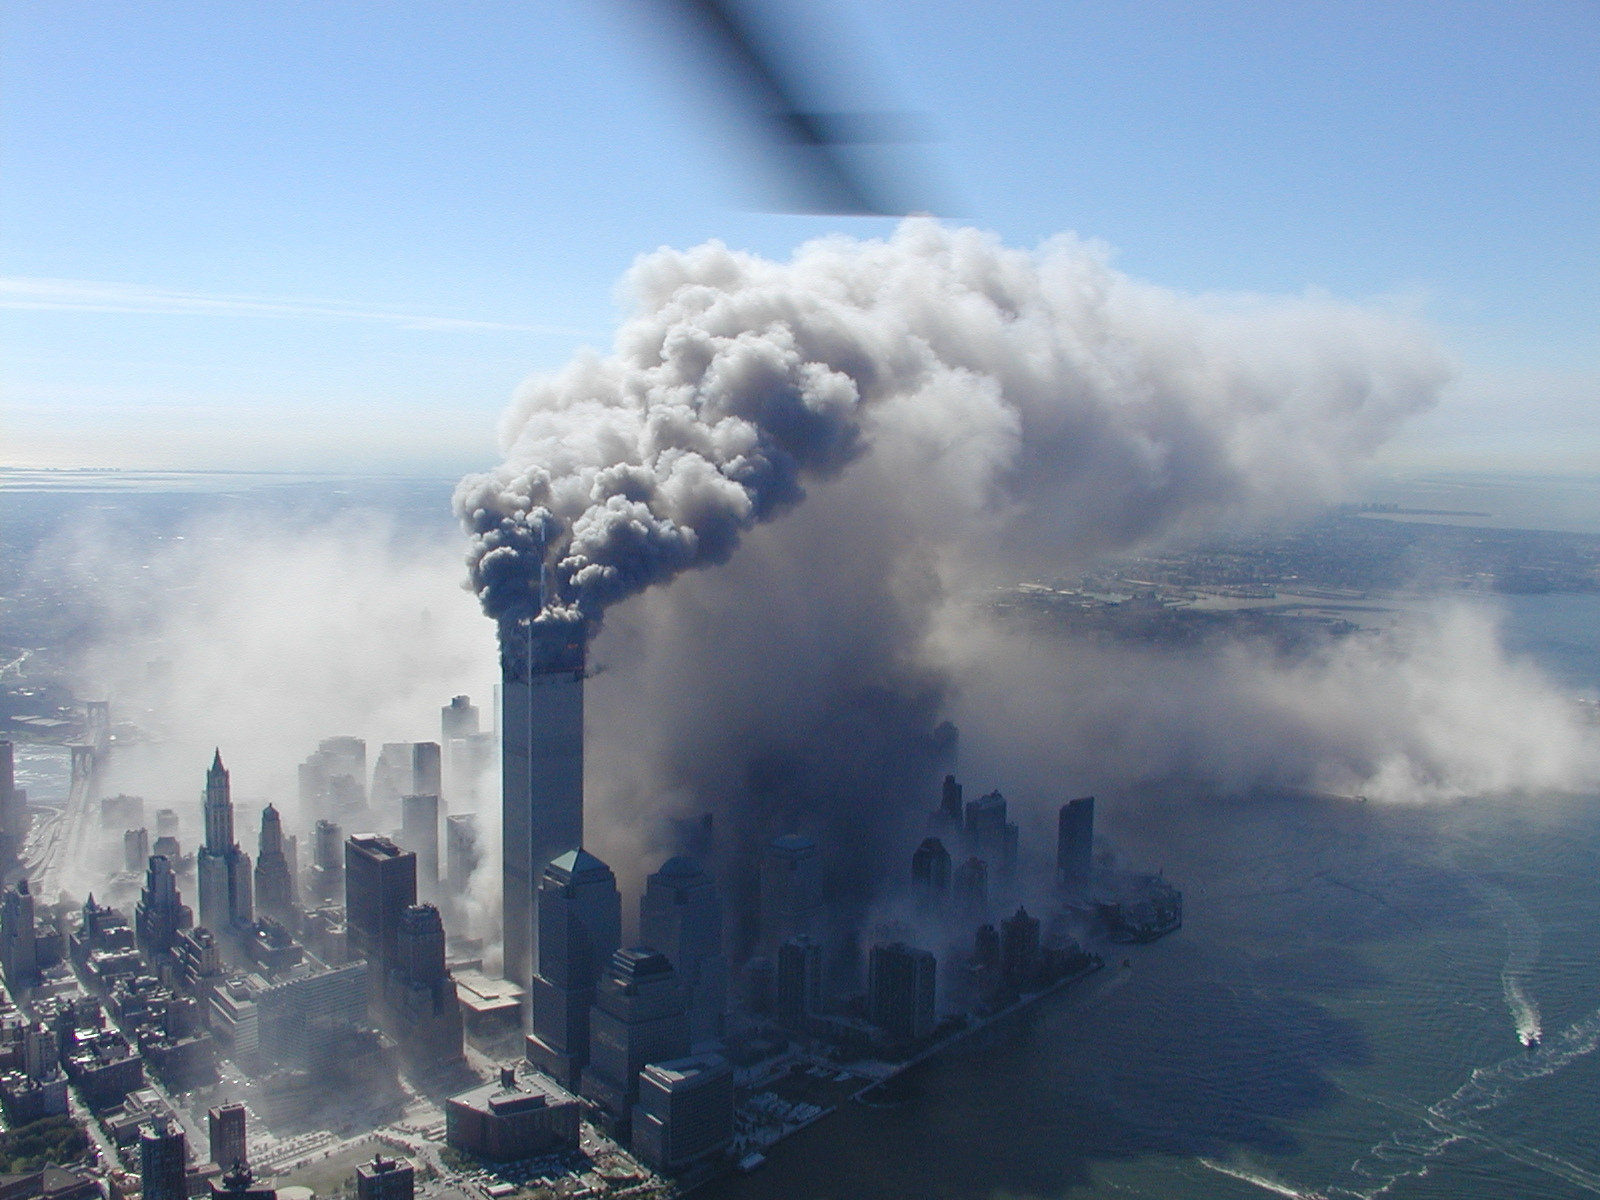 9/11 smoke towers